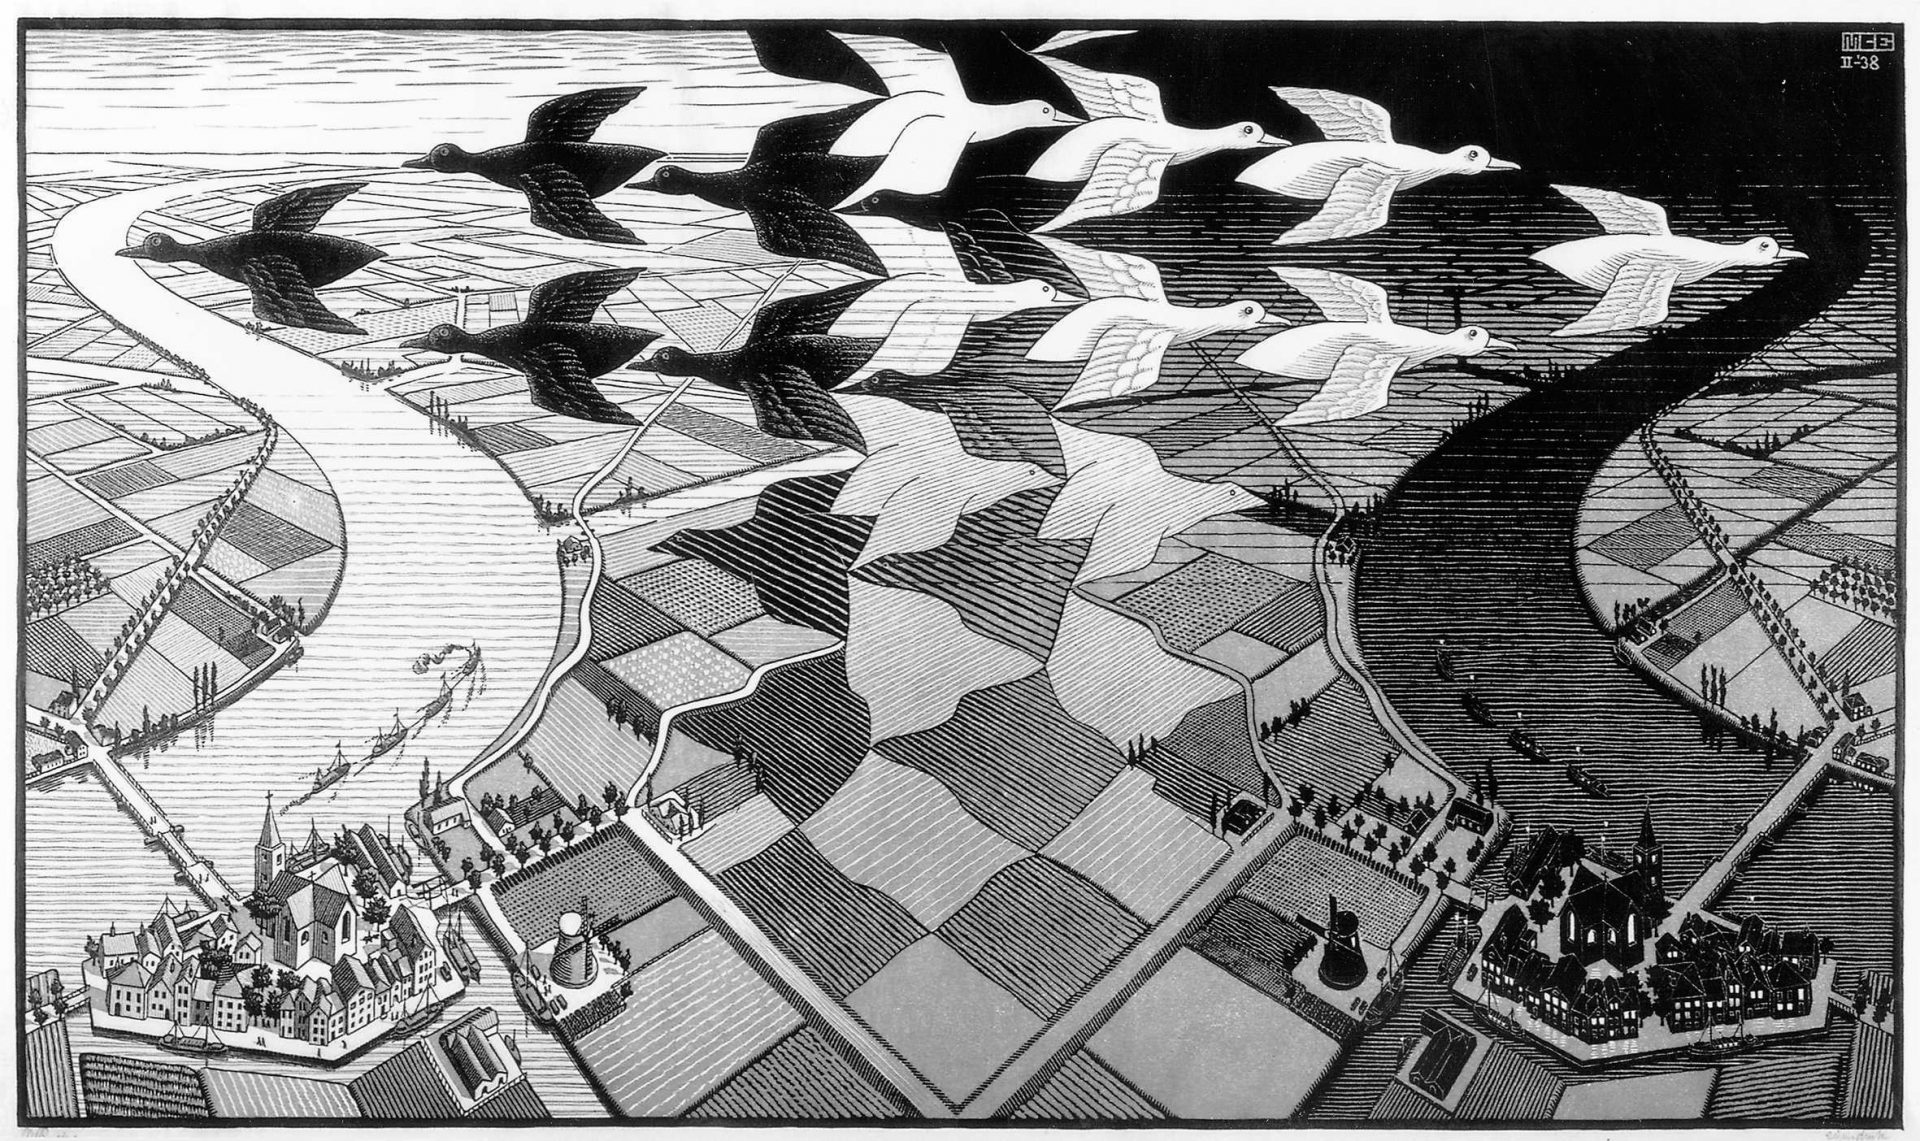 Trabalho do artista holandês M. C. Escher